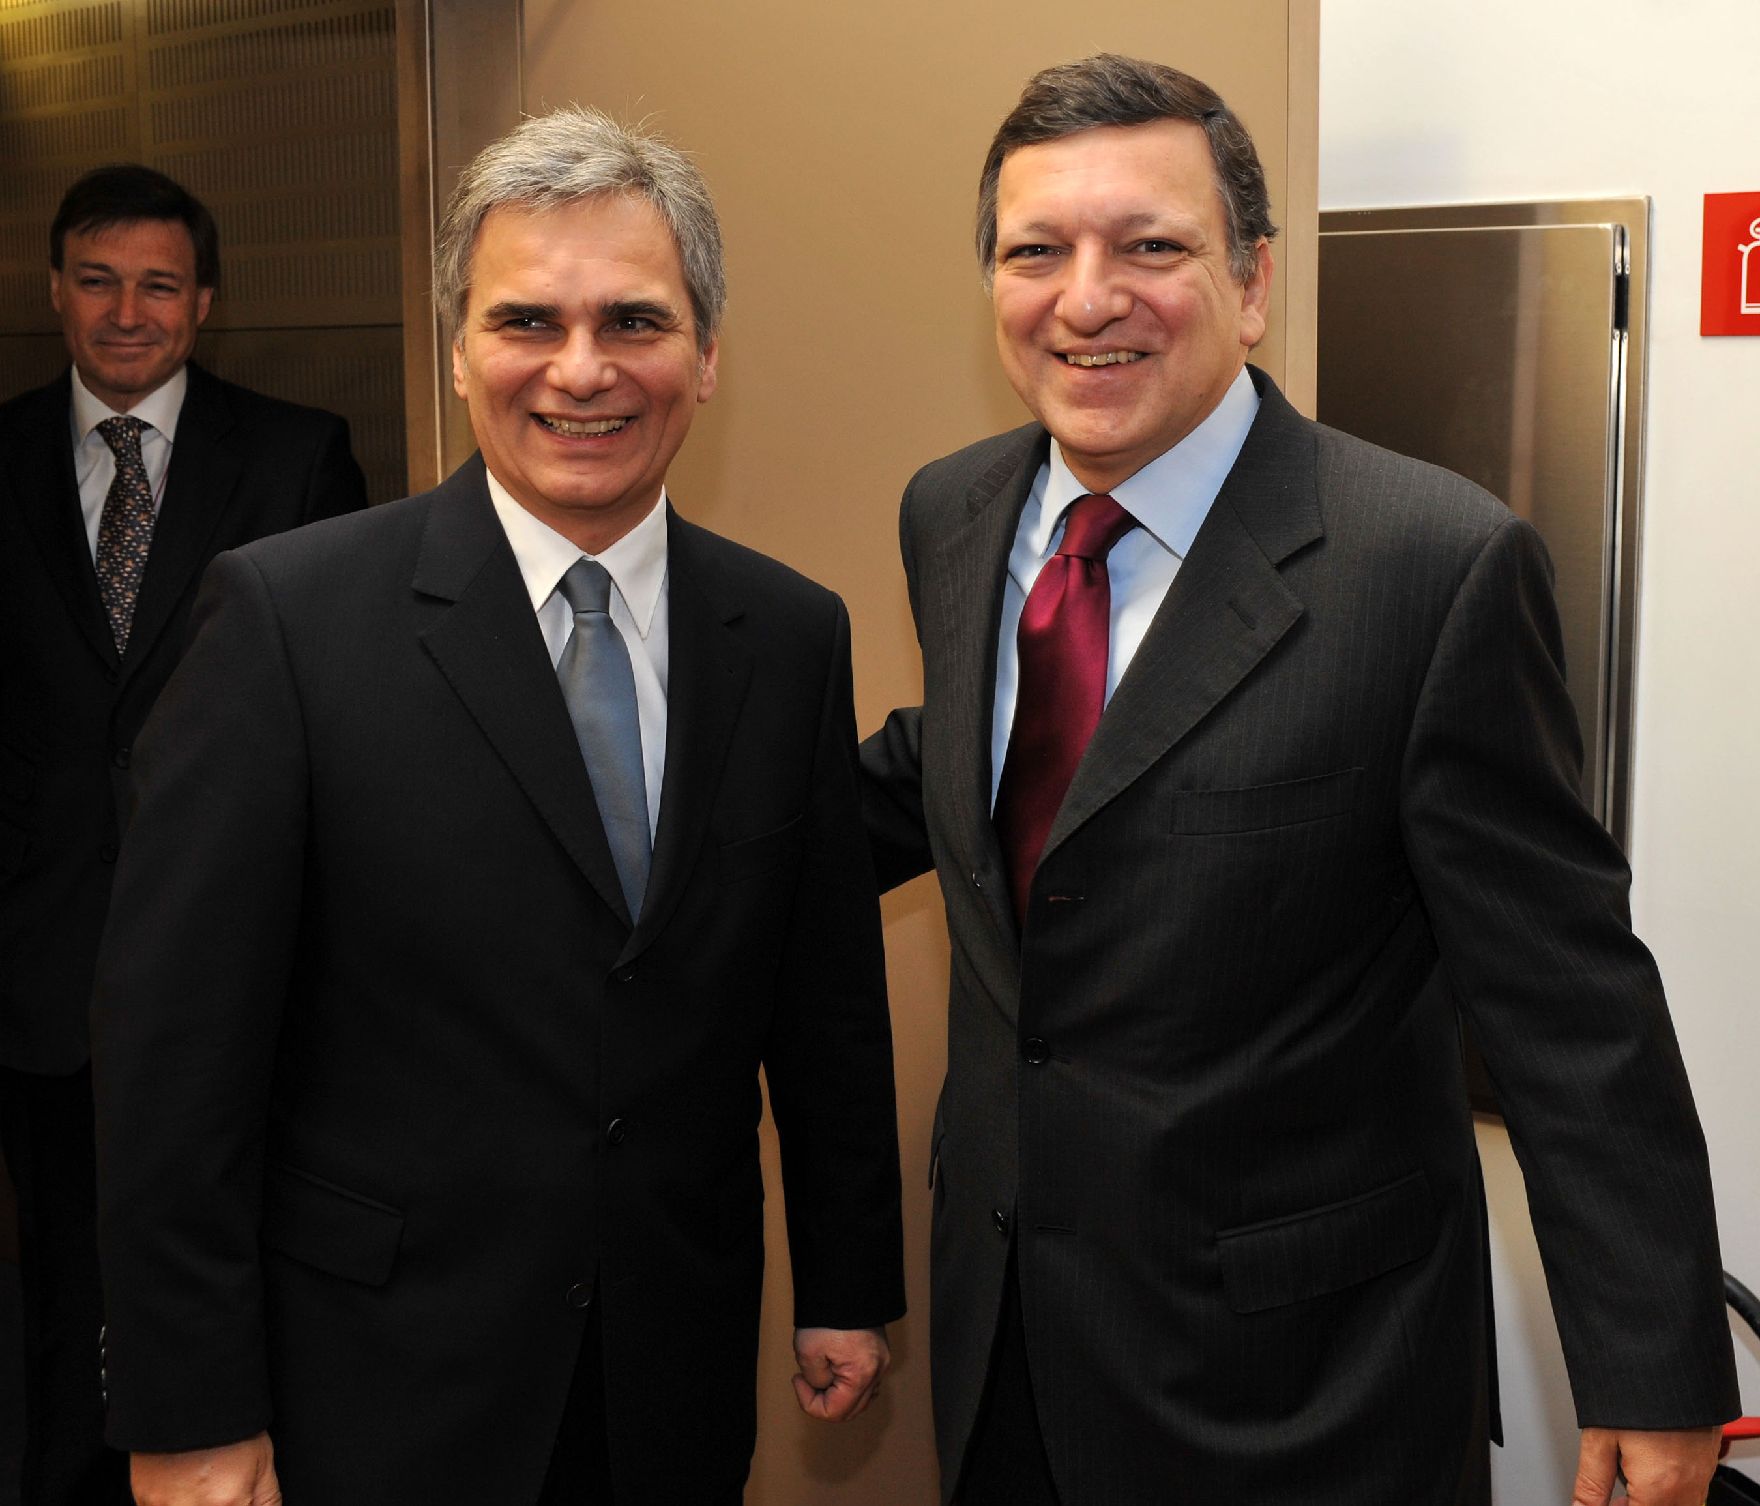 Donnerstag, den 11. Dezember 2008 traf Österreichs Bundeskanzler Werner Faymann (L) in Brüssel, Belgien im Vorfeld der Wintertagung des Europäischen Rates der EU-Staats- und Regierungschefs und Außenminister mit EU-Kommisssionspräsident José Manuel Durao Barroso (R) zu einem Vieraugengespräch zusammen.